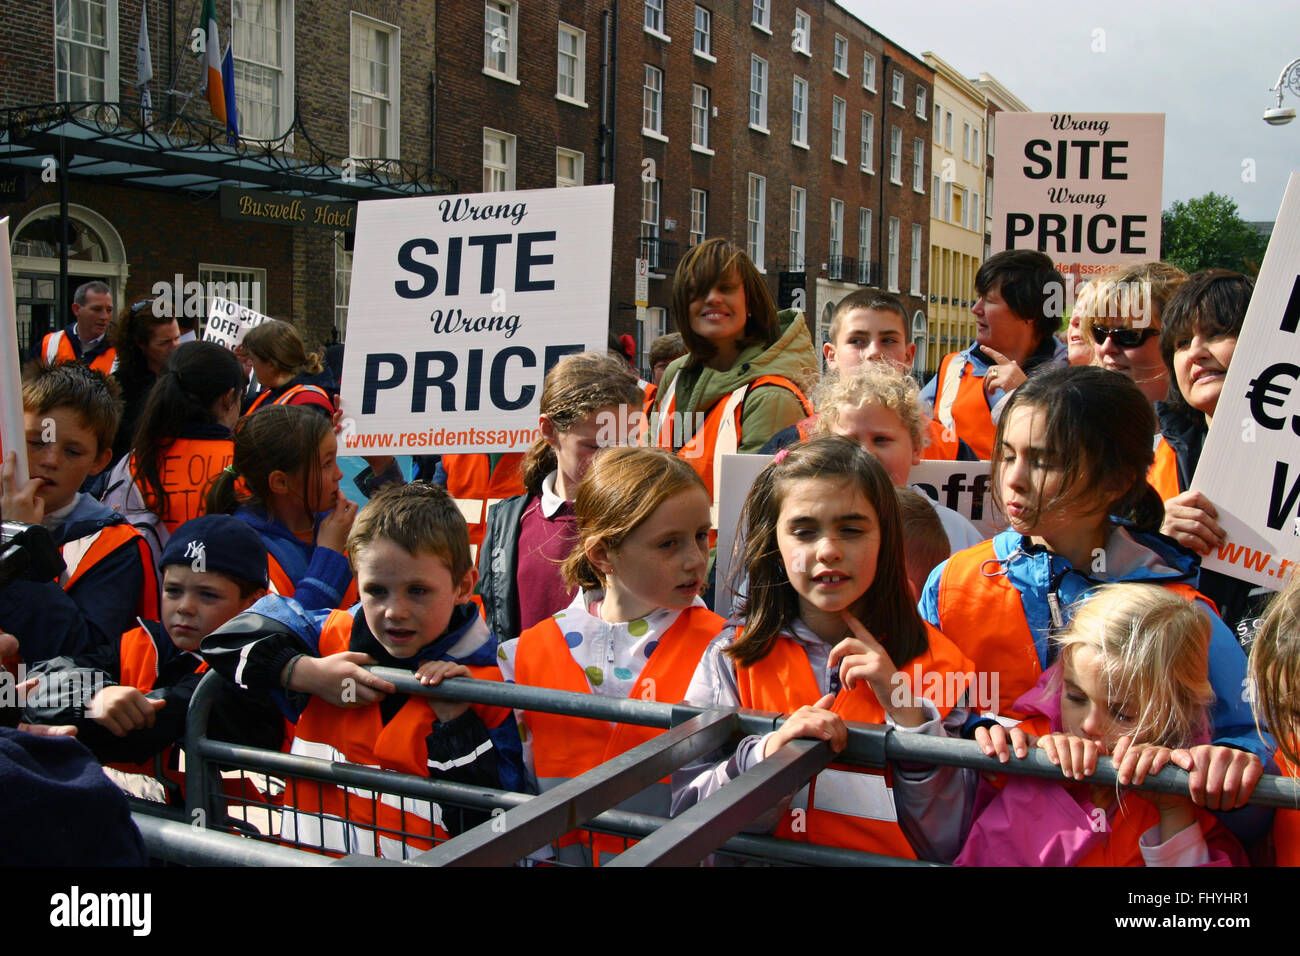 Jeunes à barrière durant une marche de protestation à l'extérieur de Leinster House Dublin Irlande Banque D'Images